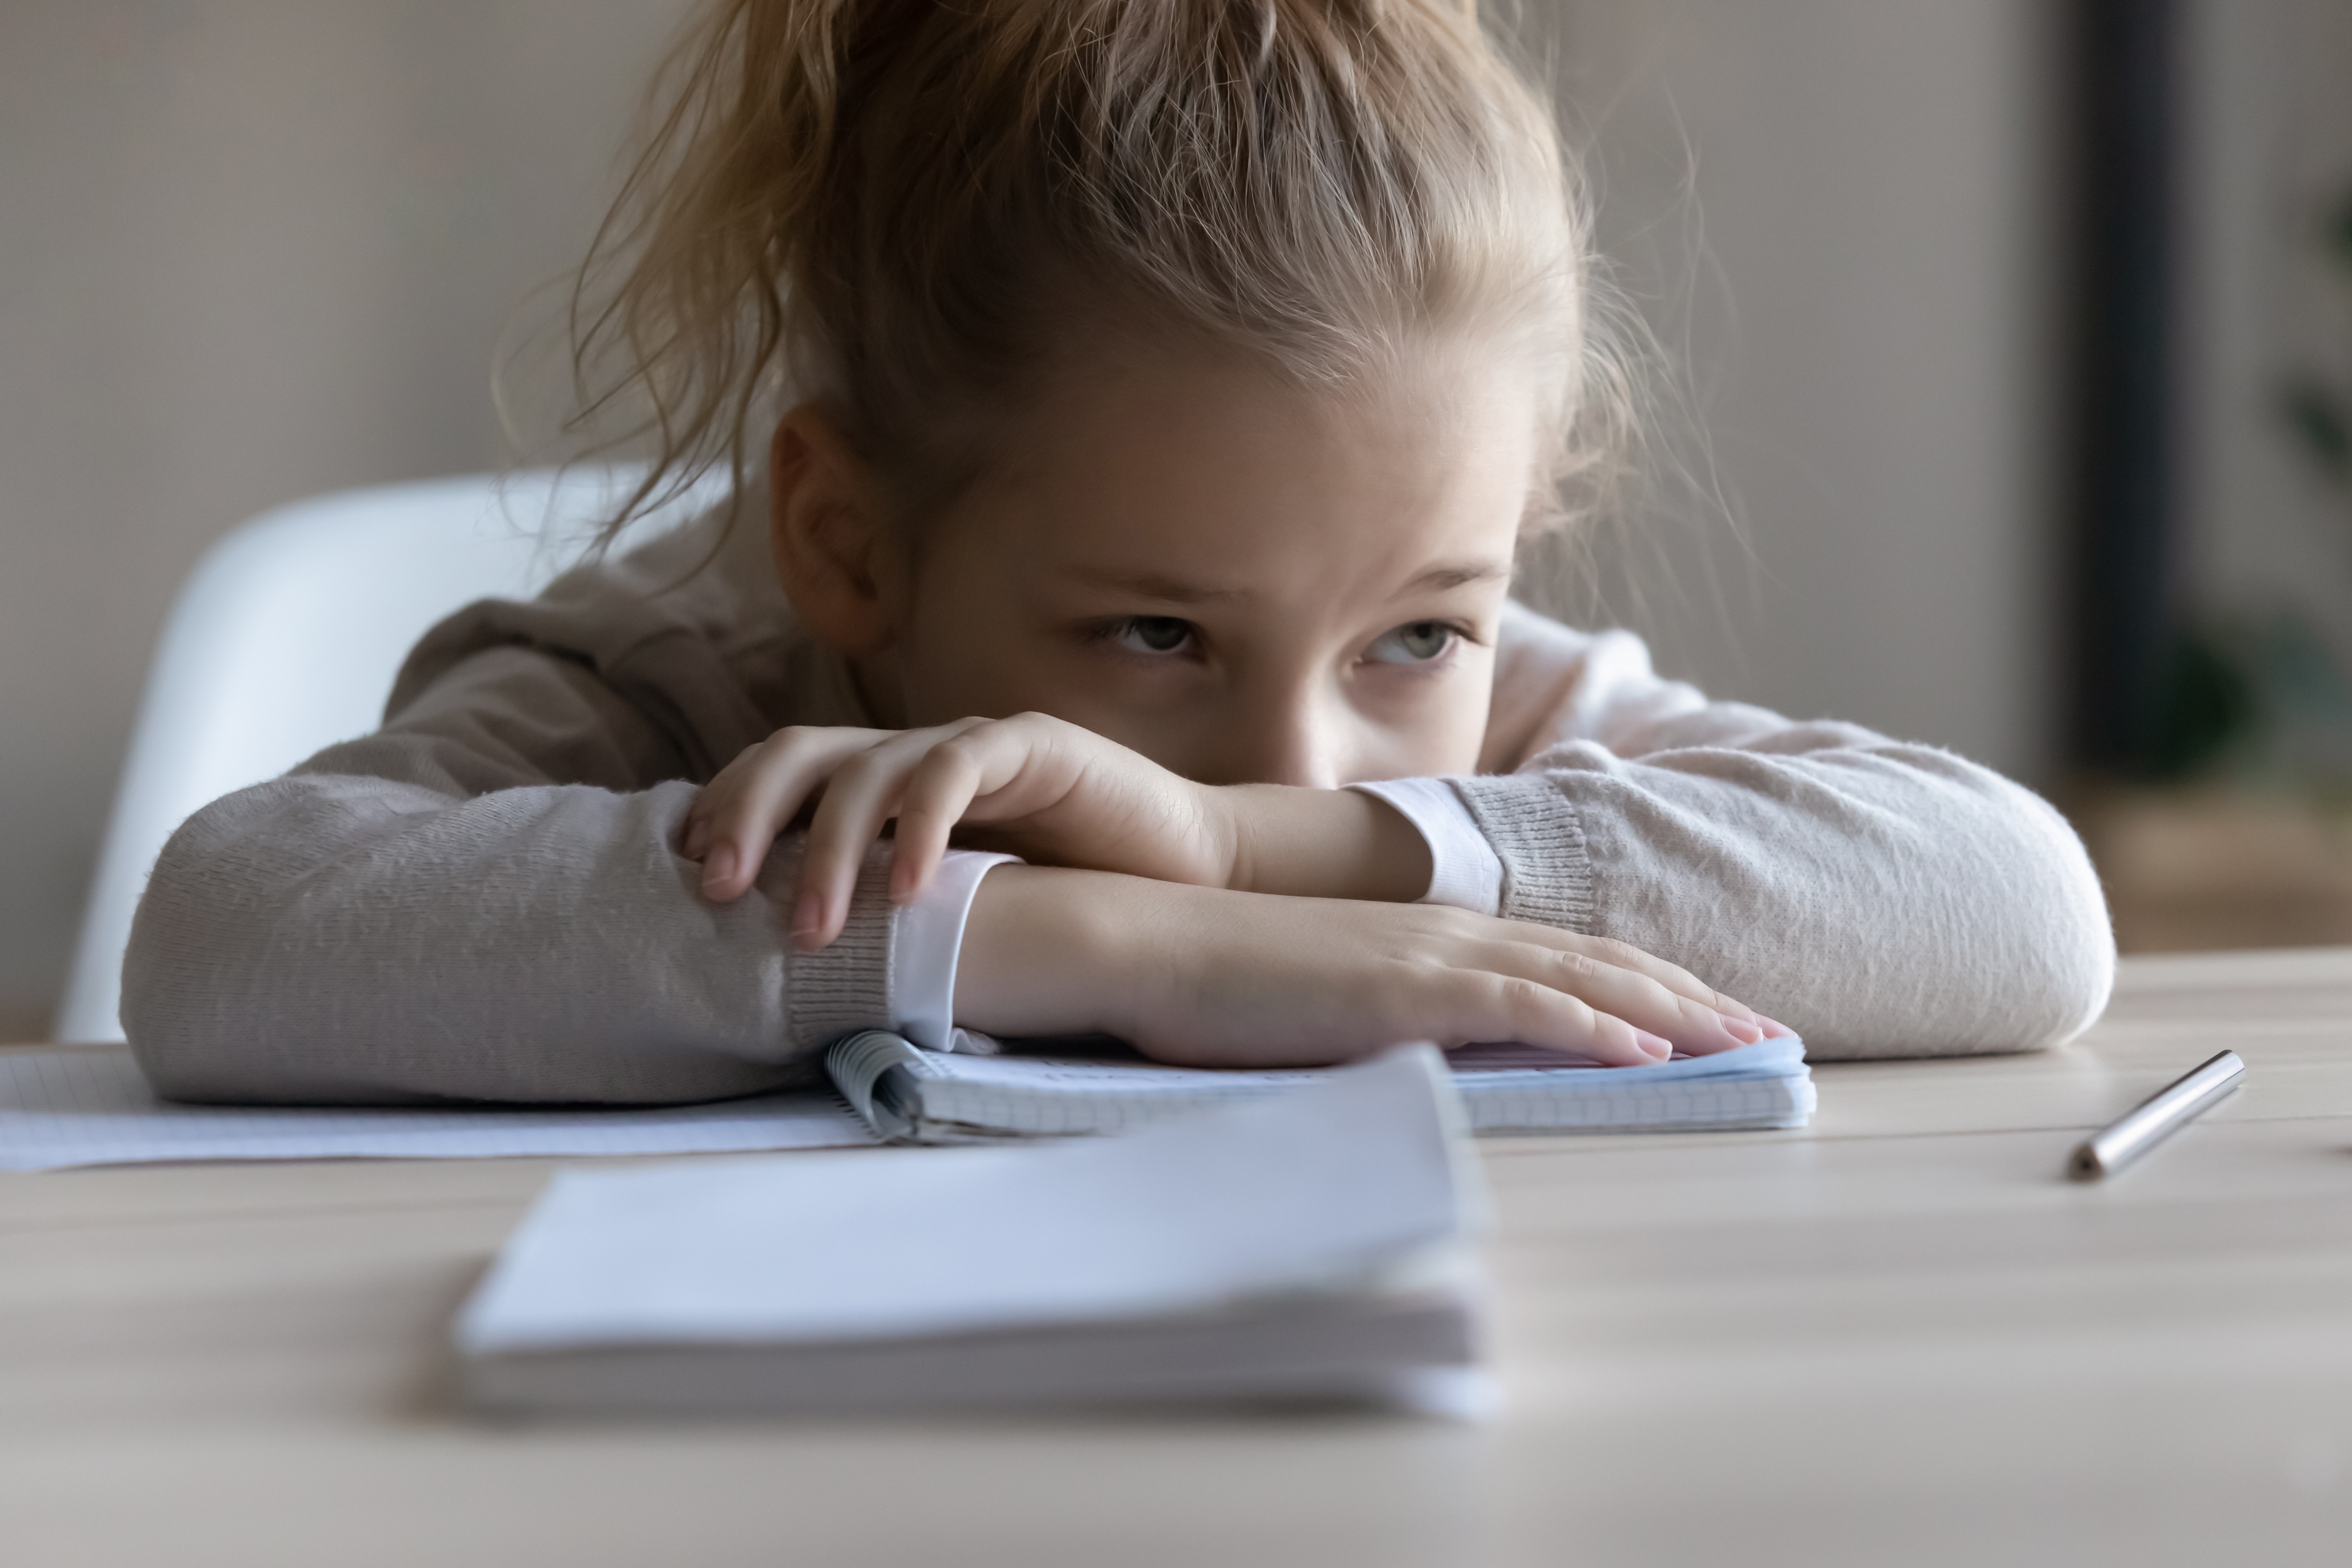 Une petite fille triste pose sa tête sur la table, distraite par son travail | Source : Shutterstock